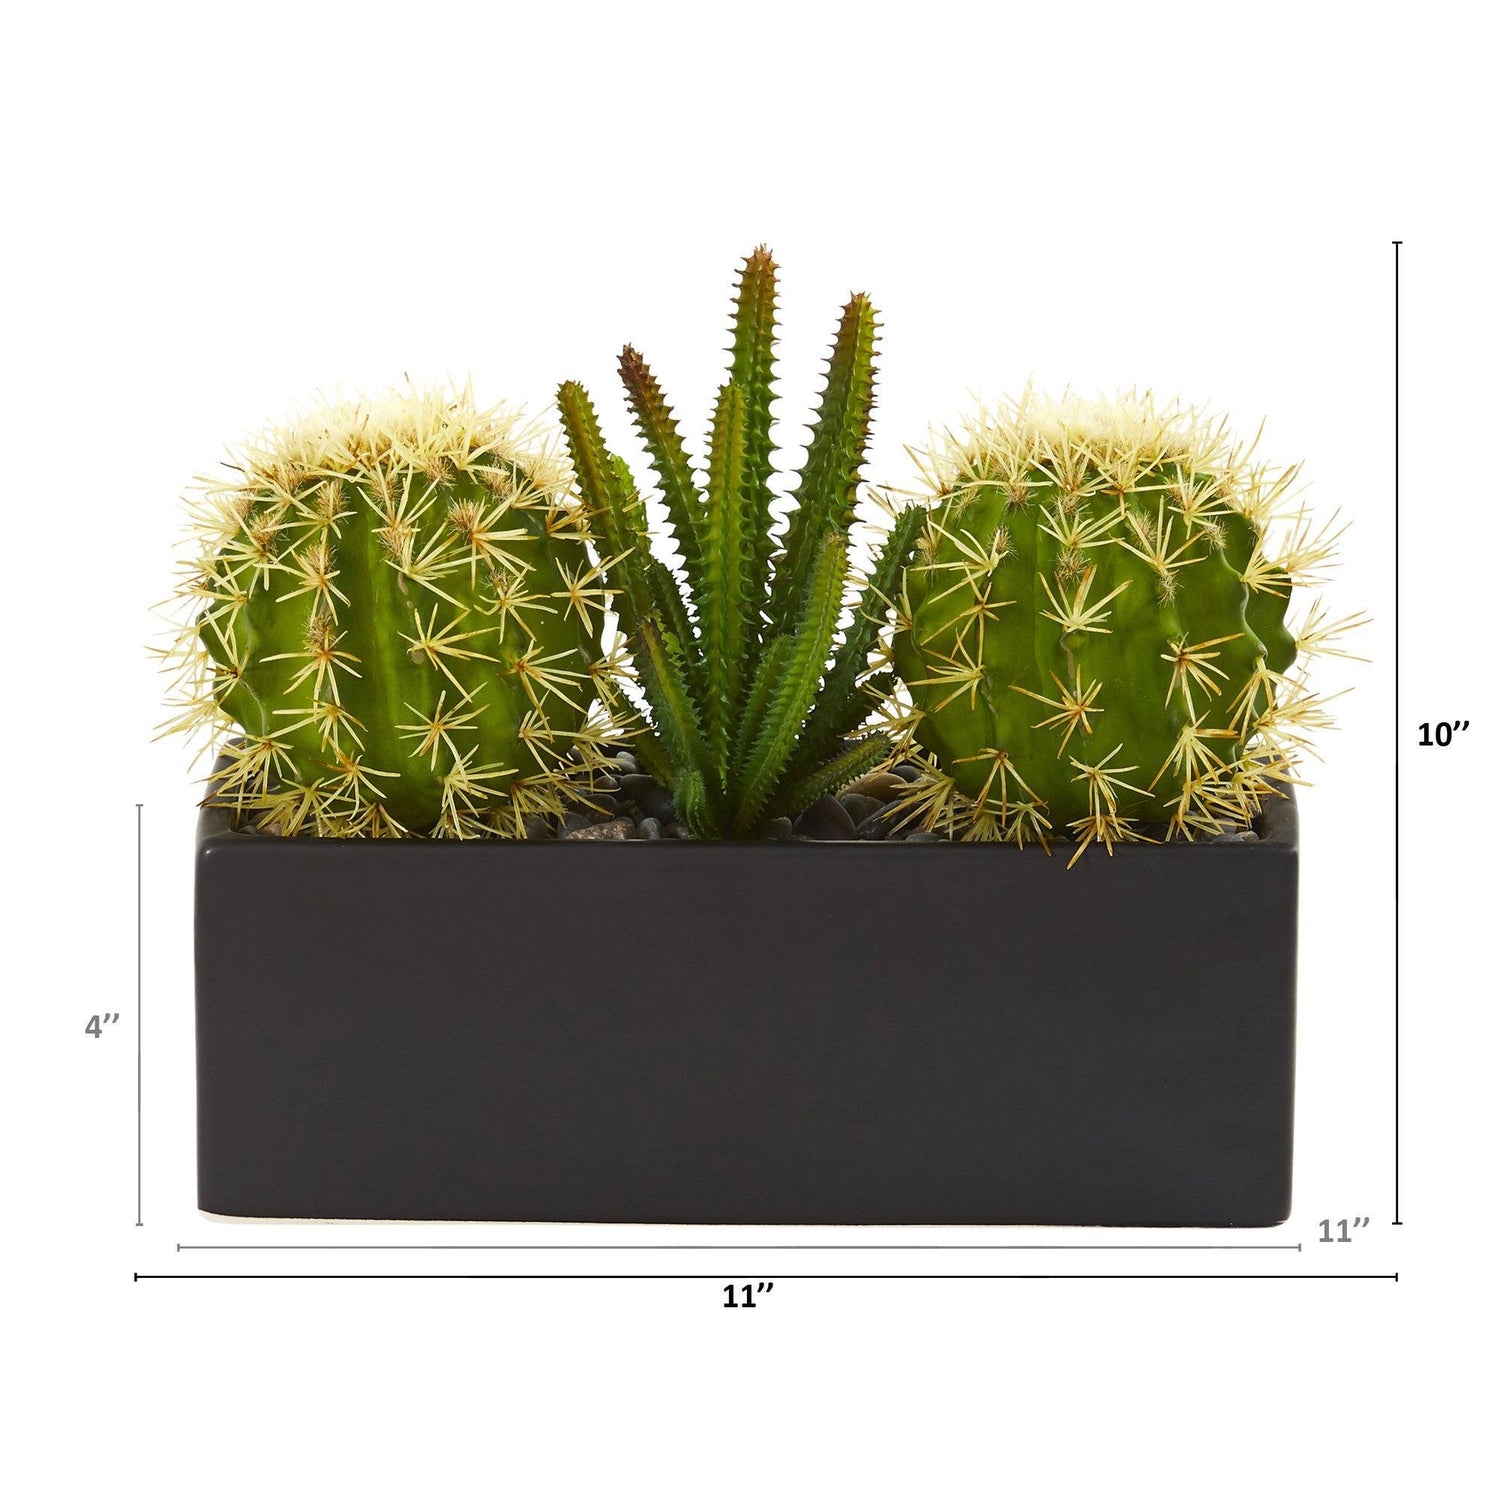 11” Cactus Succulent Artificial Plant in Black Planter